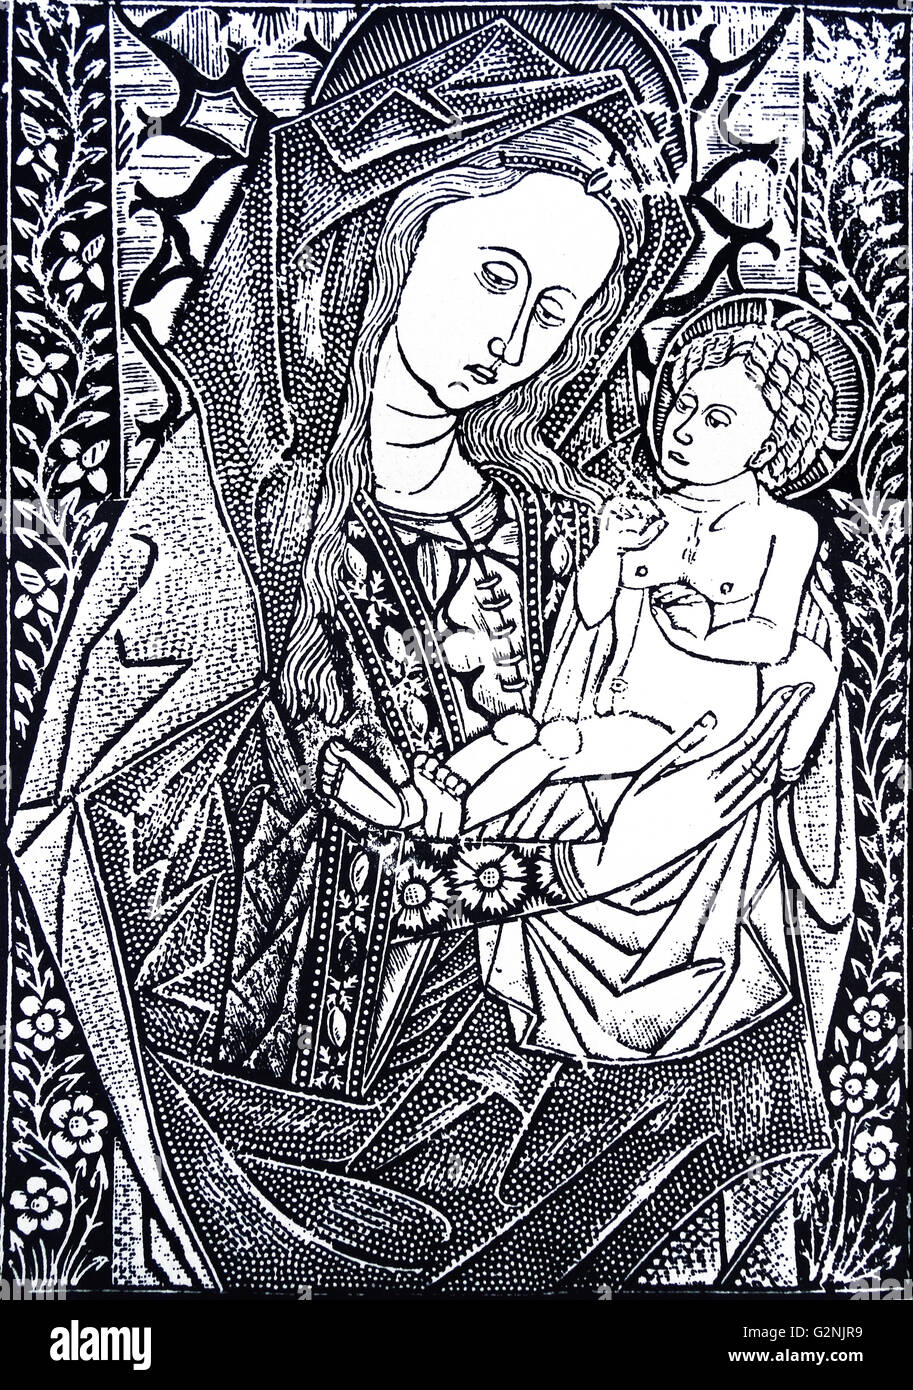 Imprimer de la Vierge à l'enfant de manière criblée (style pointillé). Elle a été créée à l'aide de plaques métalliques pour donner l'effet d'être criblée de trous. En date du 15e siècle Banque D'Images